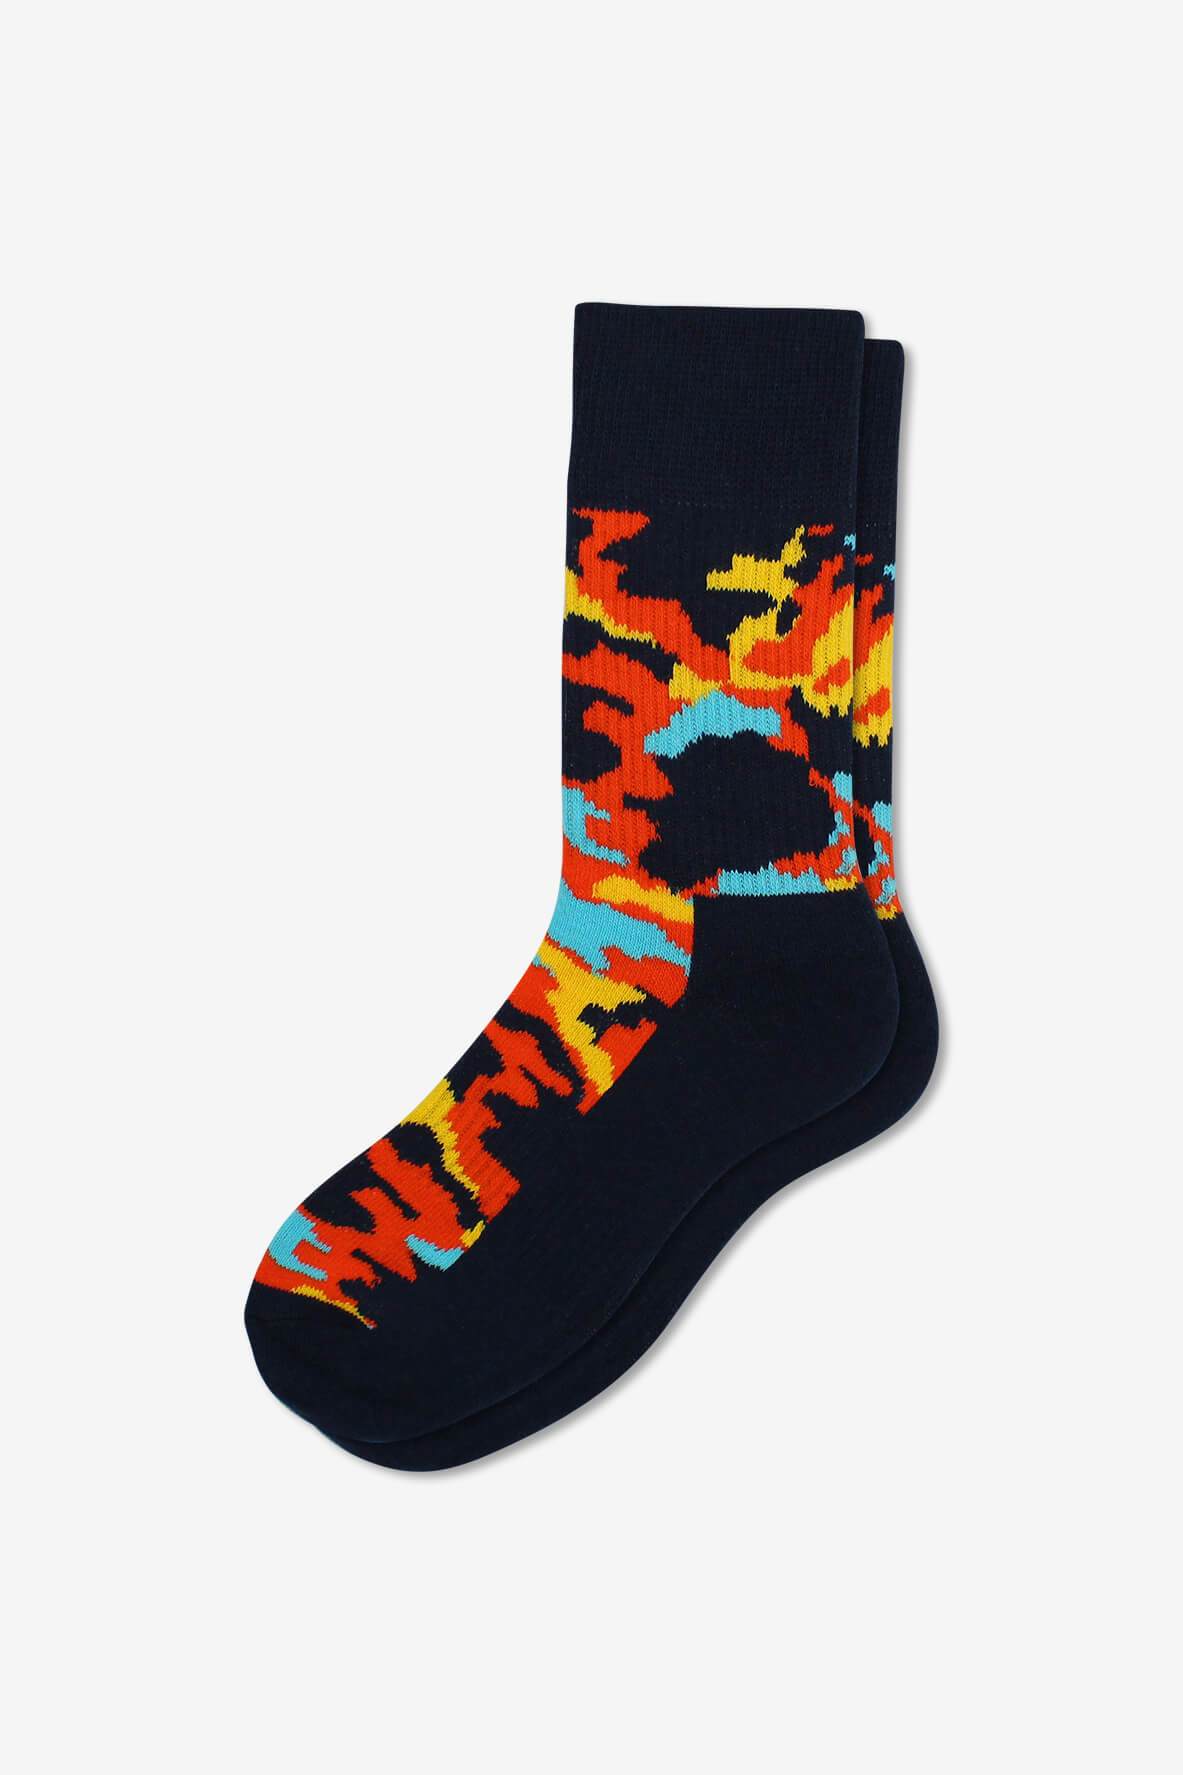 Socks IMG_5385, socks, GoTie